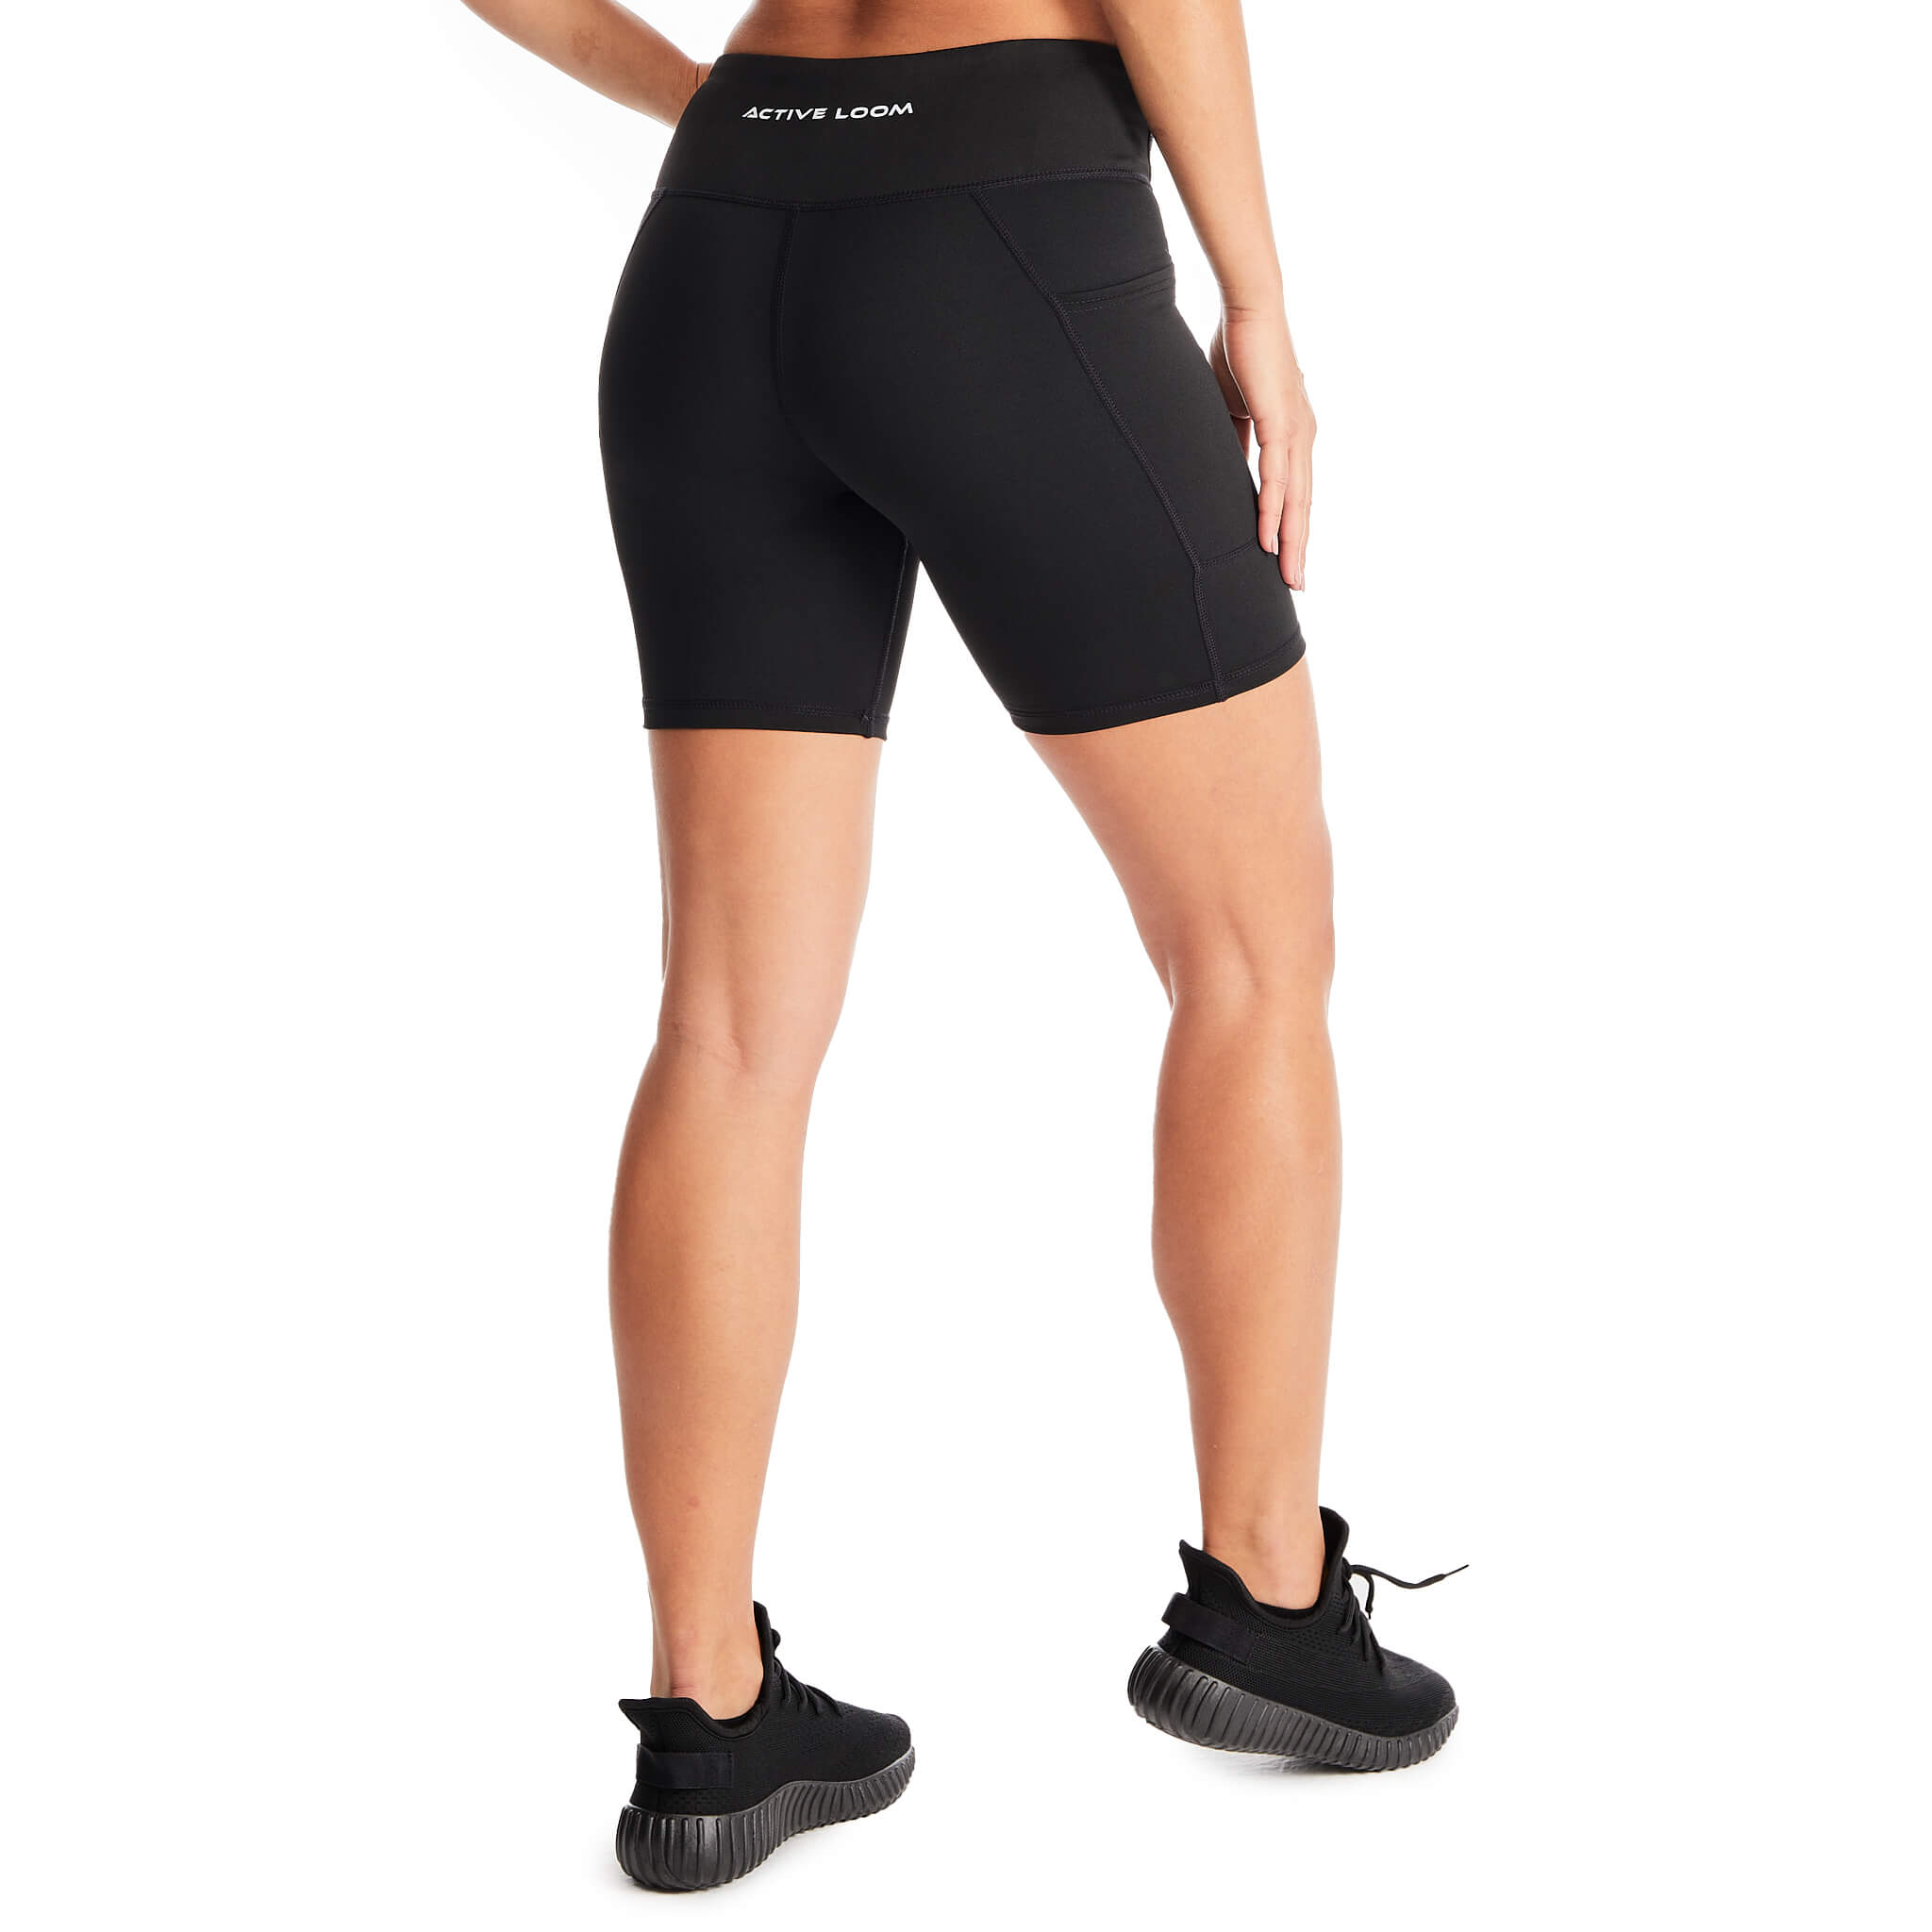 AL Biker Shorts - Black - Active Loom